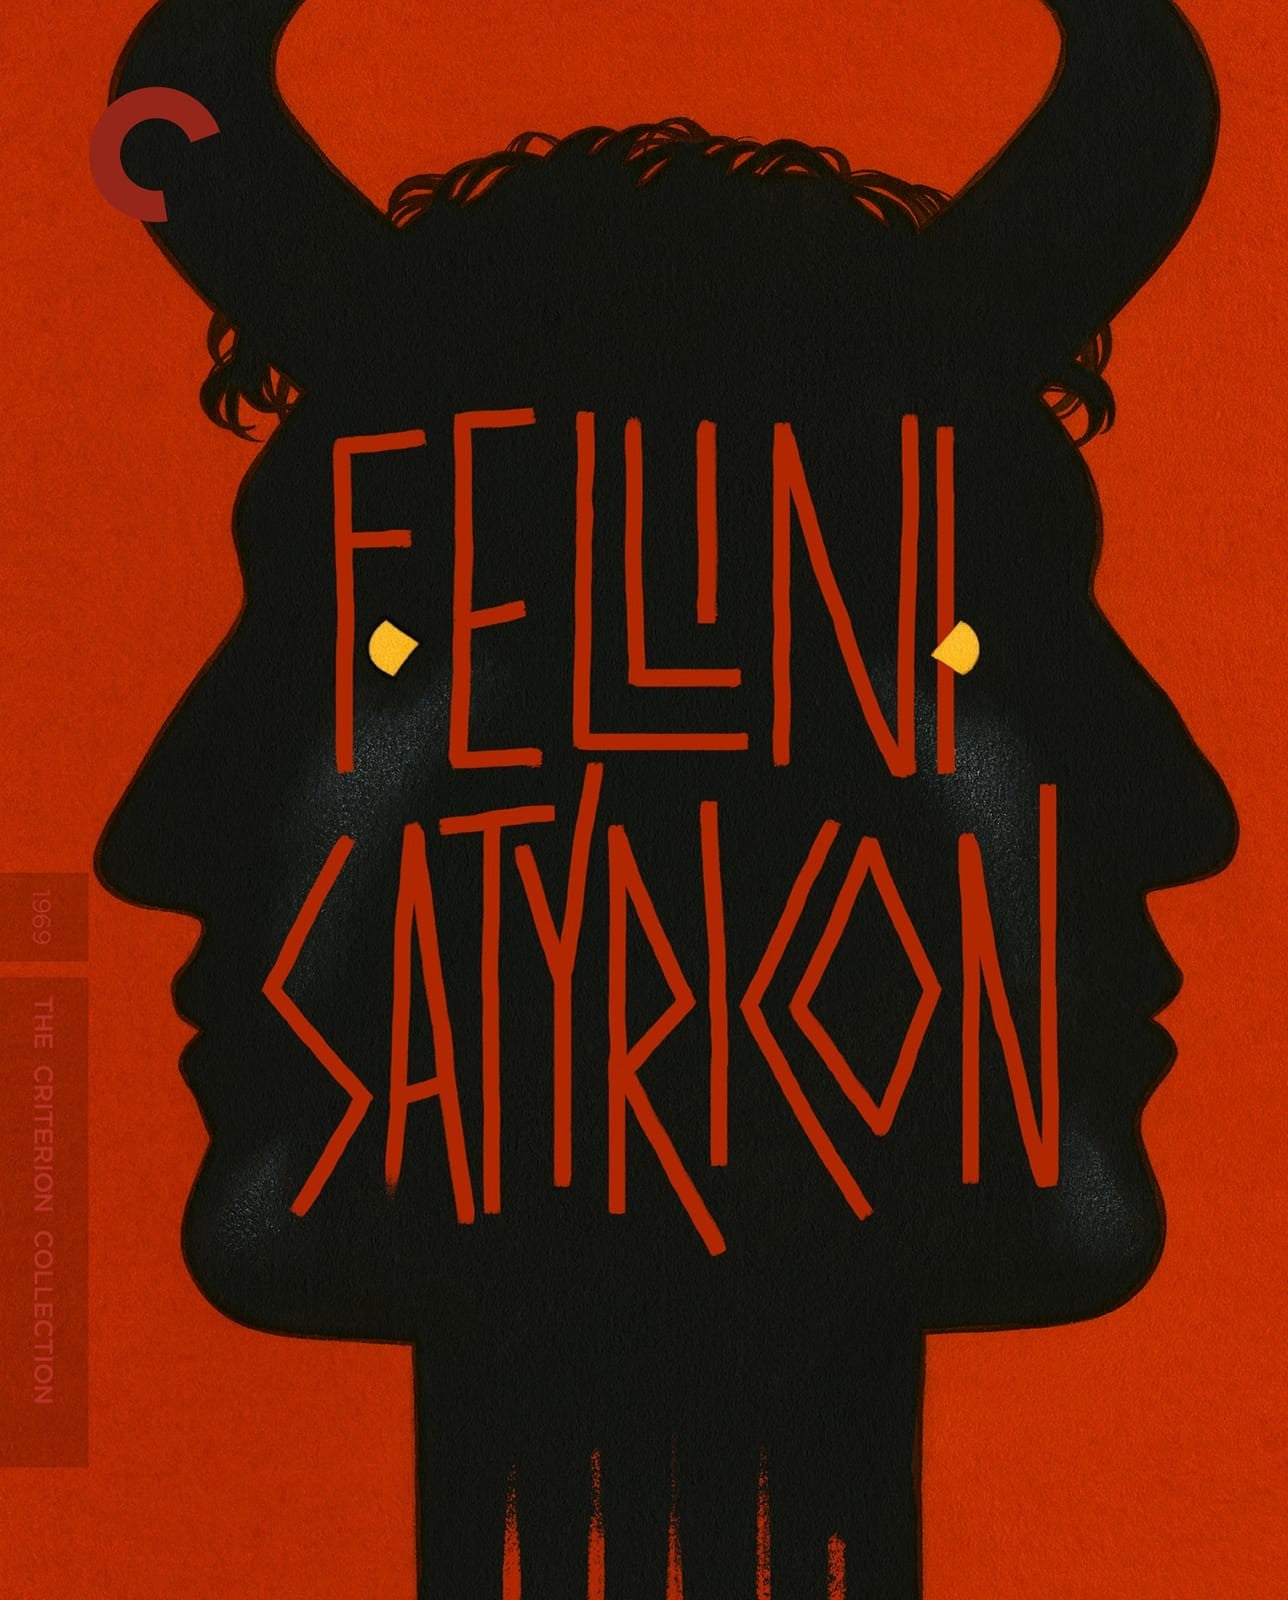 Fellini, Federico - Fellini Satyricon